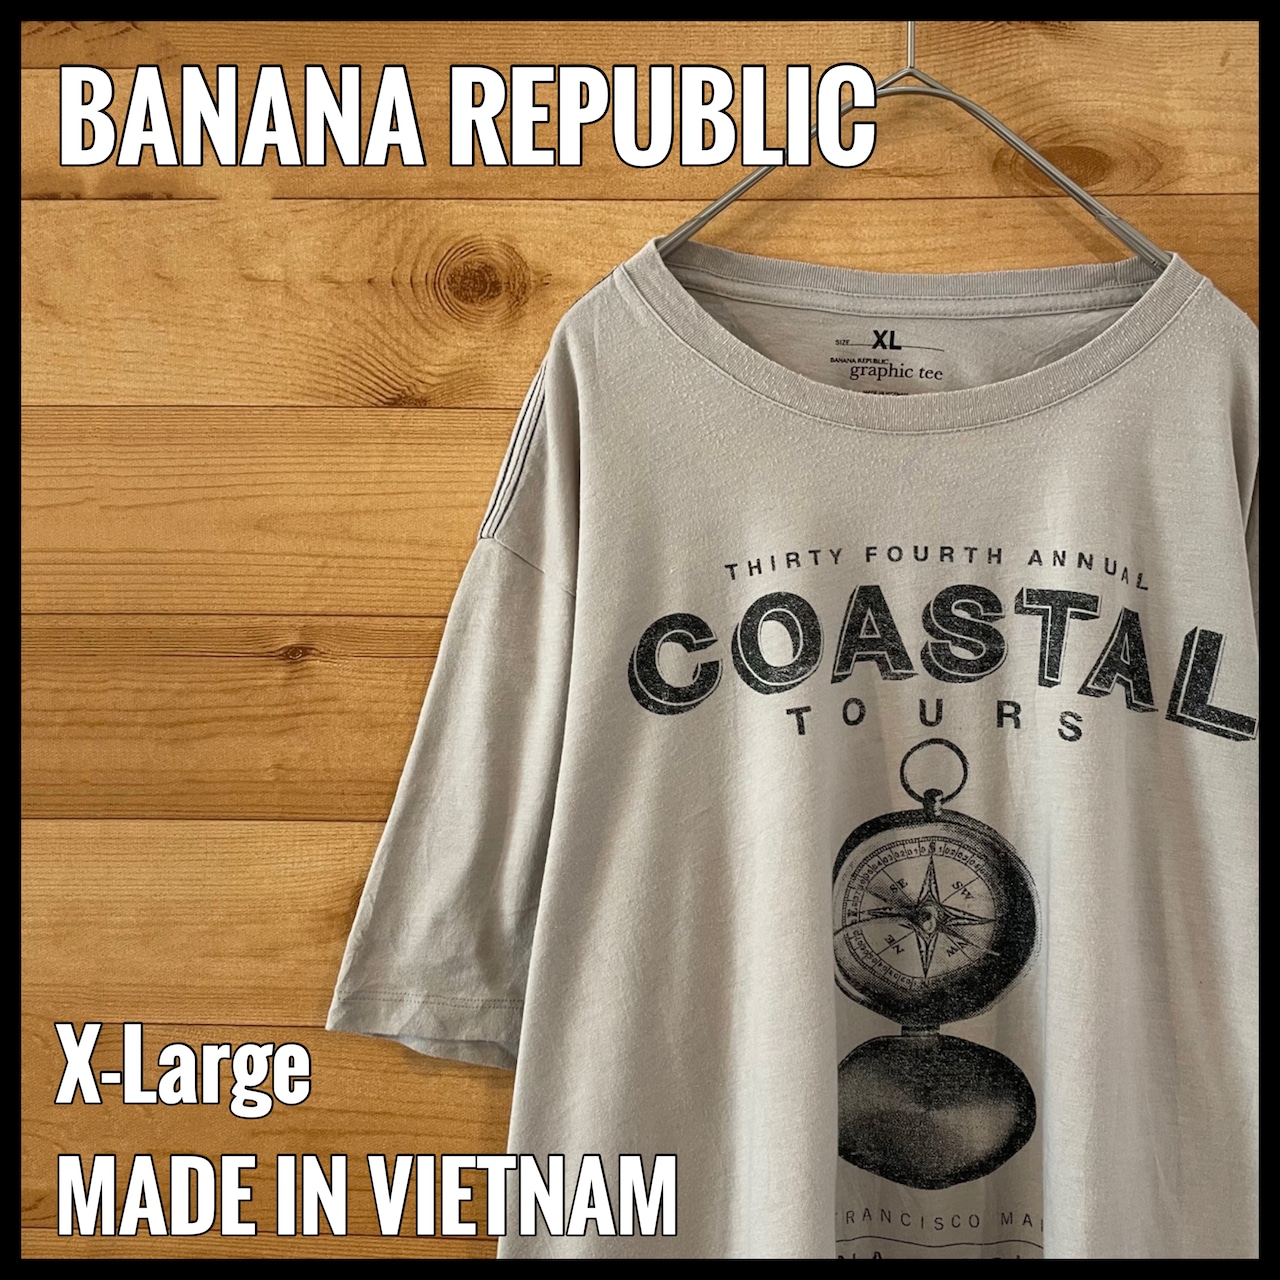 【BANANA REPUBLIC】グラフィック プリント Tシャツ XL ビッグサイズ バナナパブリック US古着 アメリカ古着